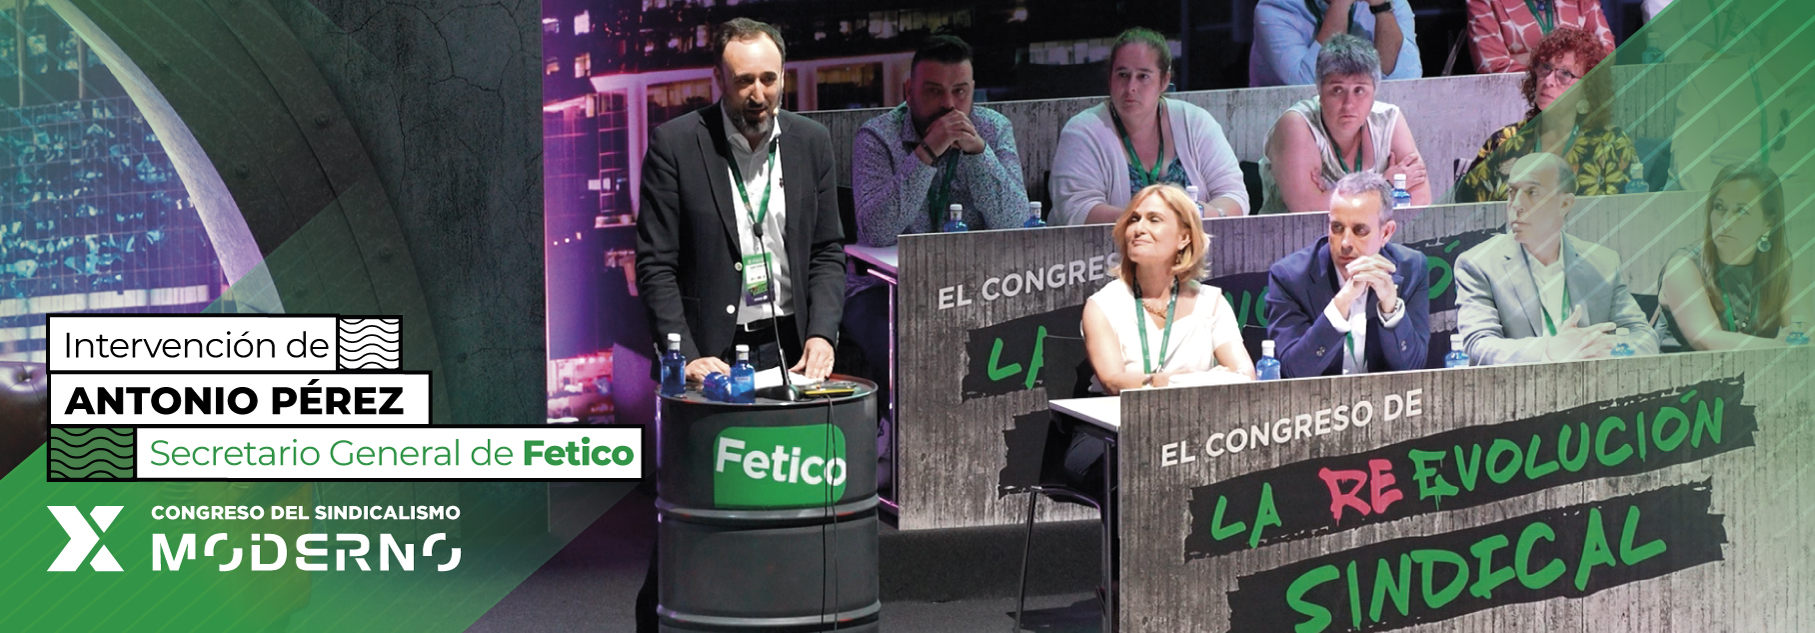 Intervención del Secretario General de Fetico, Antonio Pérez, al cierre del X congreso de Fetico